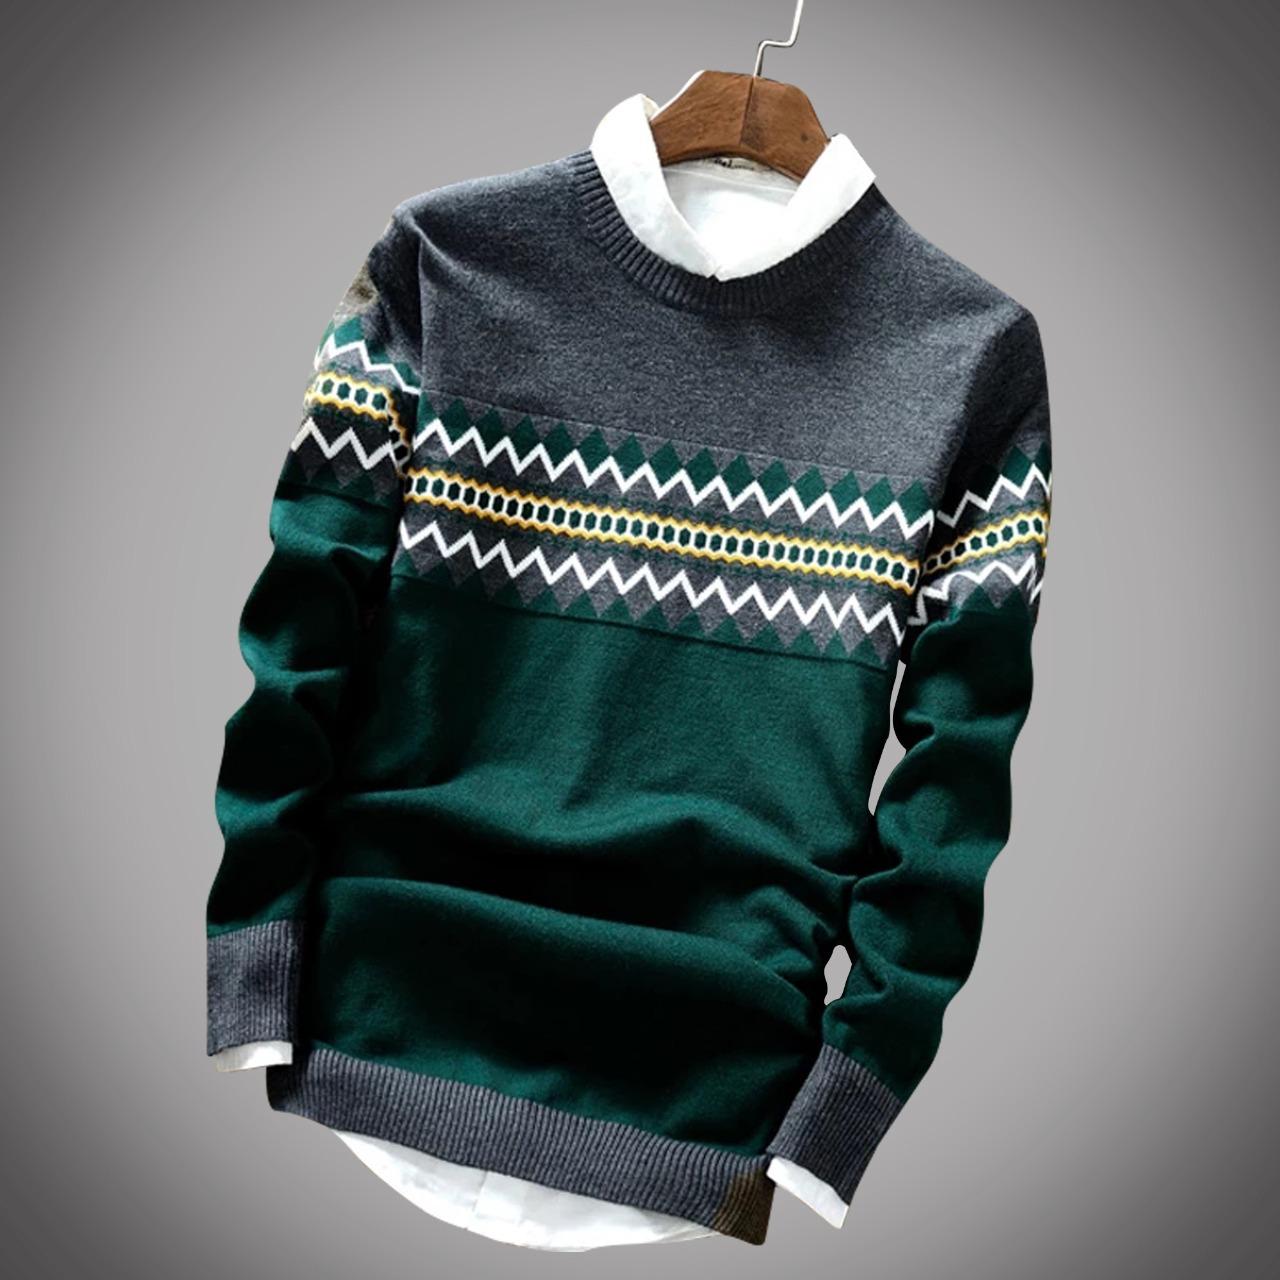 Cotton Full Sleeve Sweater for Men - GMS009